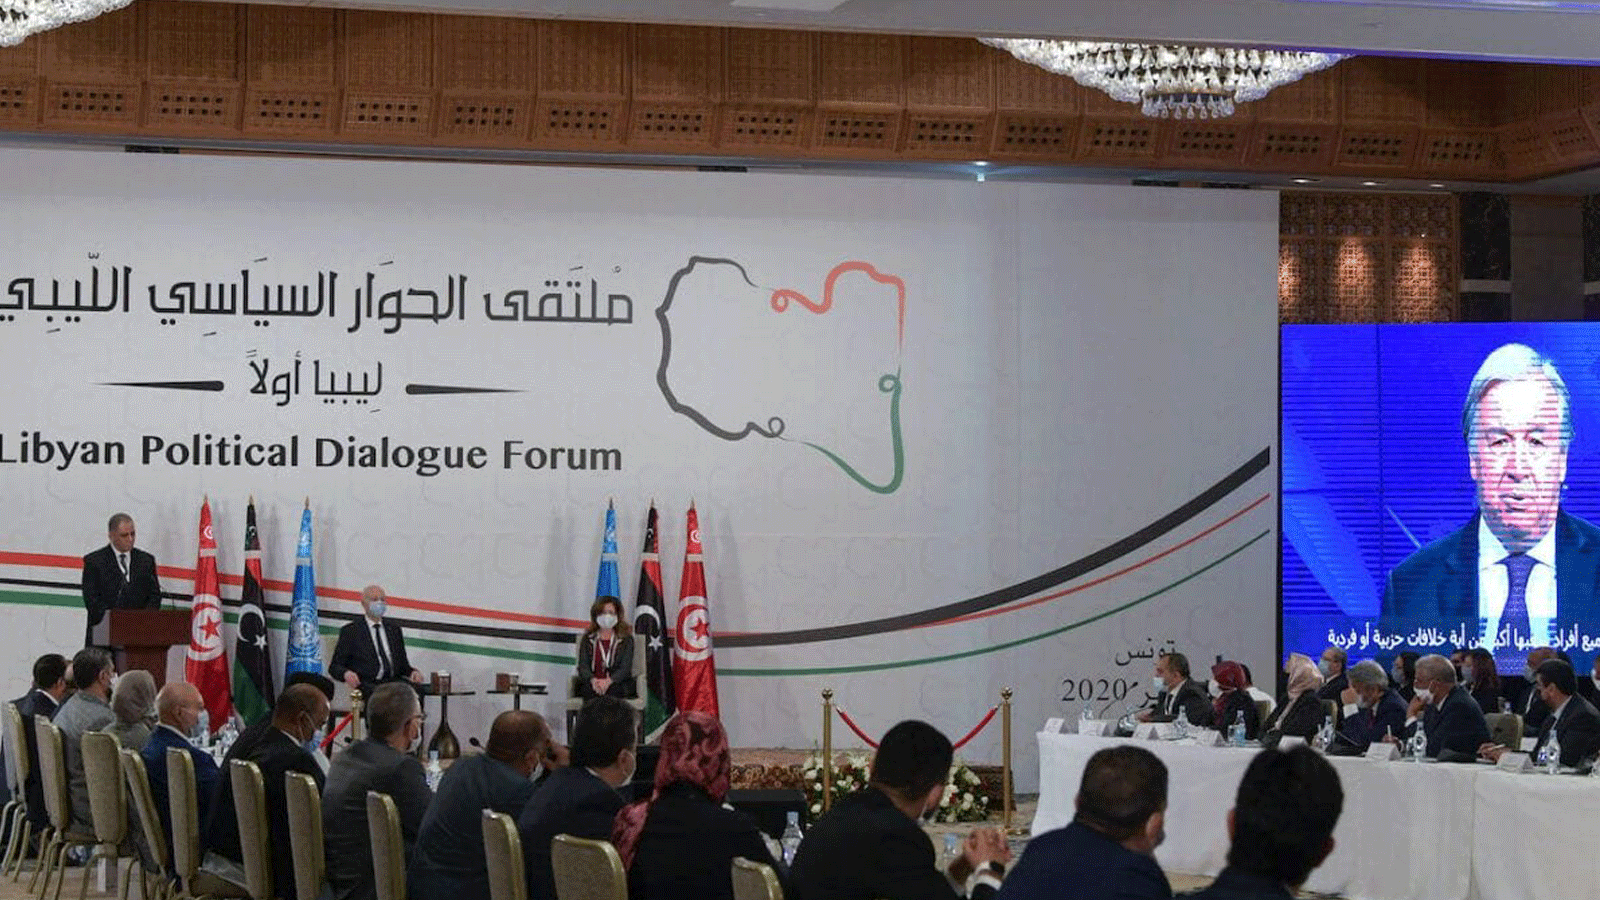 الأمين العام للأمم المتحدة أنطونيو غوتيريش يلقي كلمة للمشاركين في افتتاح منتدى الحوار السياسي الليبي الذي استضافته قمرت بضواحي العاصمة التونسية يوم 9 تشرين الثاني/ نوفمبر 2020.